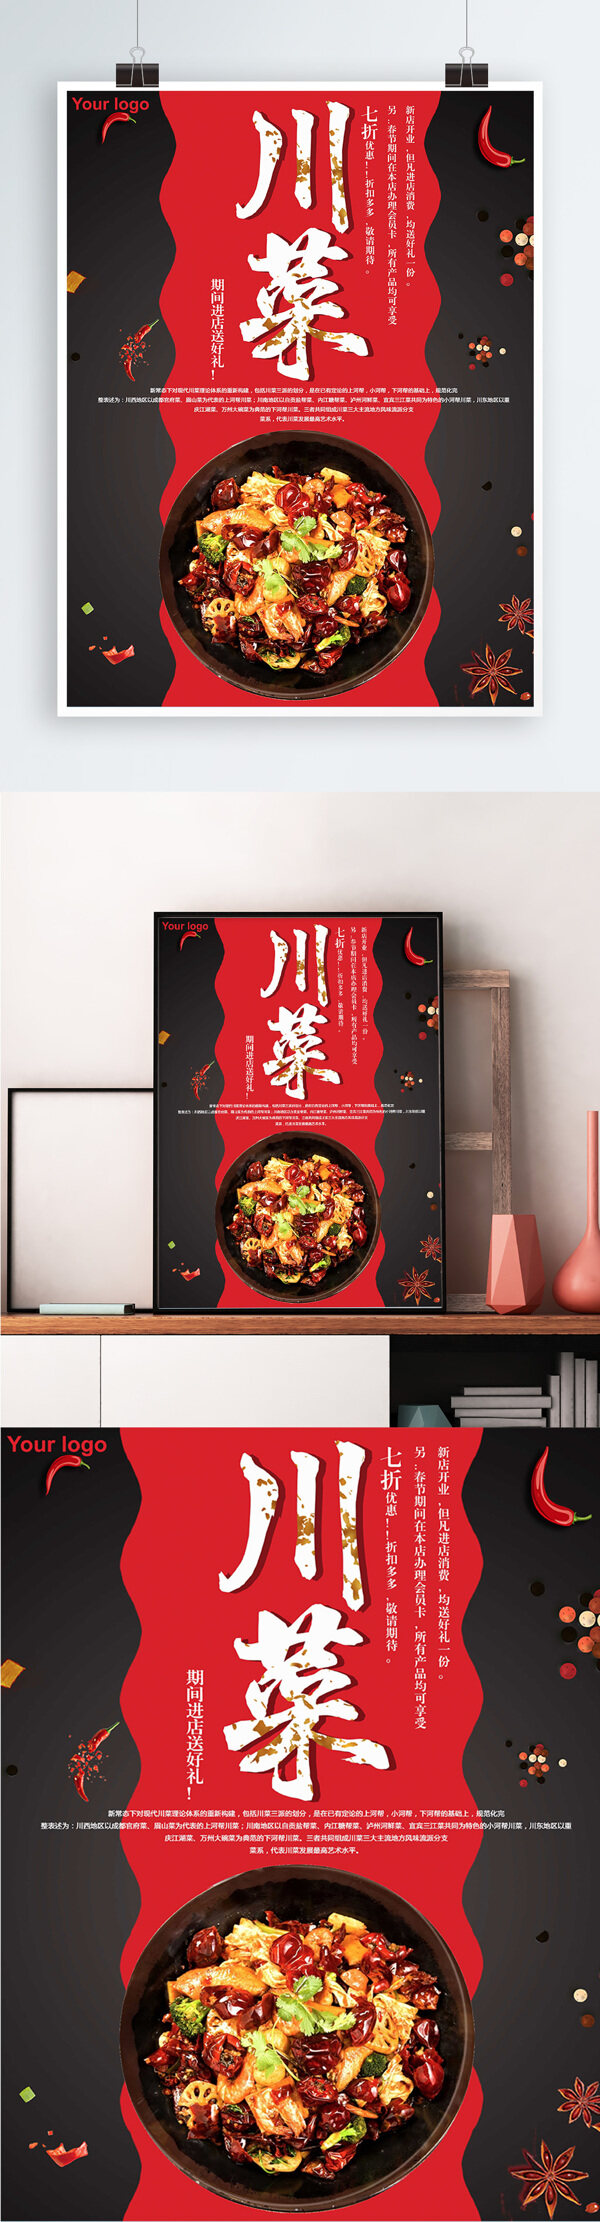 黑色背景简约大气美味川菜宣传海报